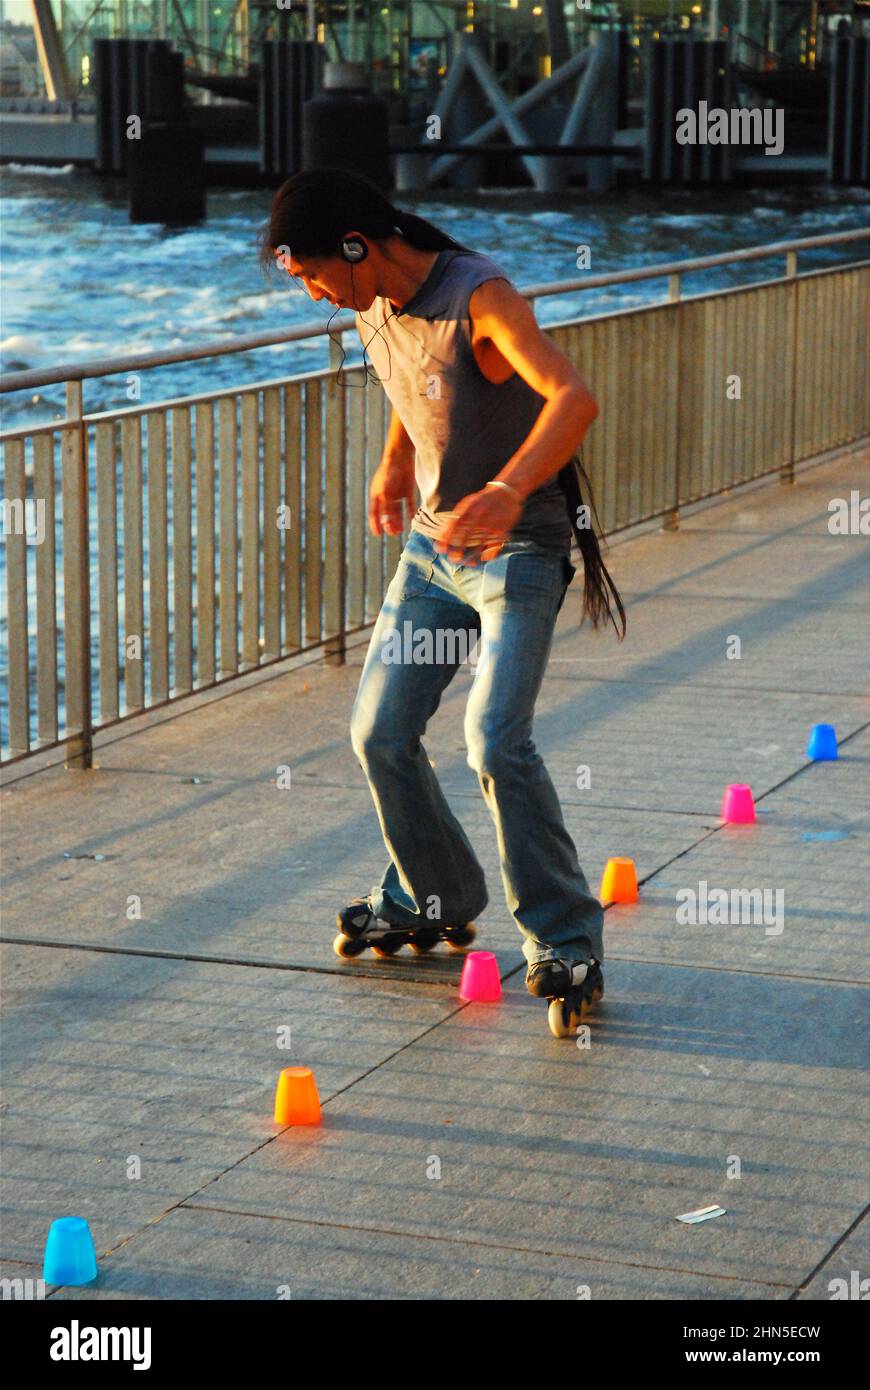 Un jeune homme pratique ses virages serrés tout en utilisant des patins en ligne, en utilisant des tasses pour marquer les virages à Battery Park, New York City Banque D'Images